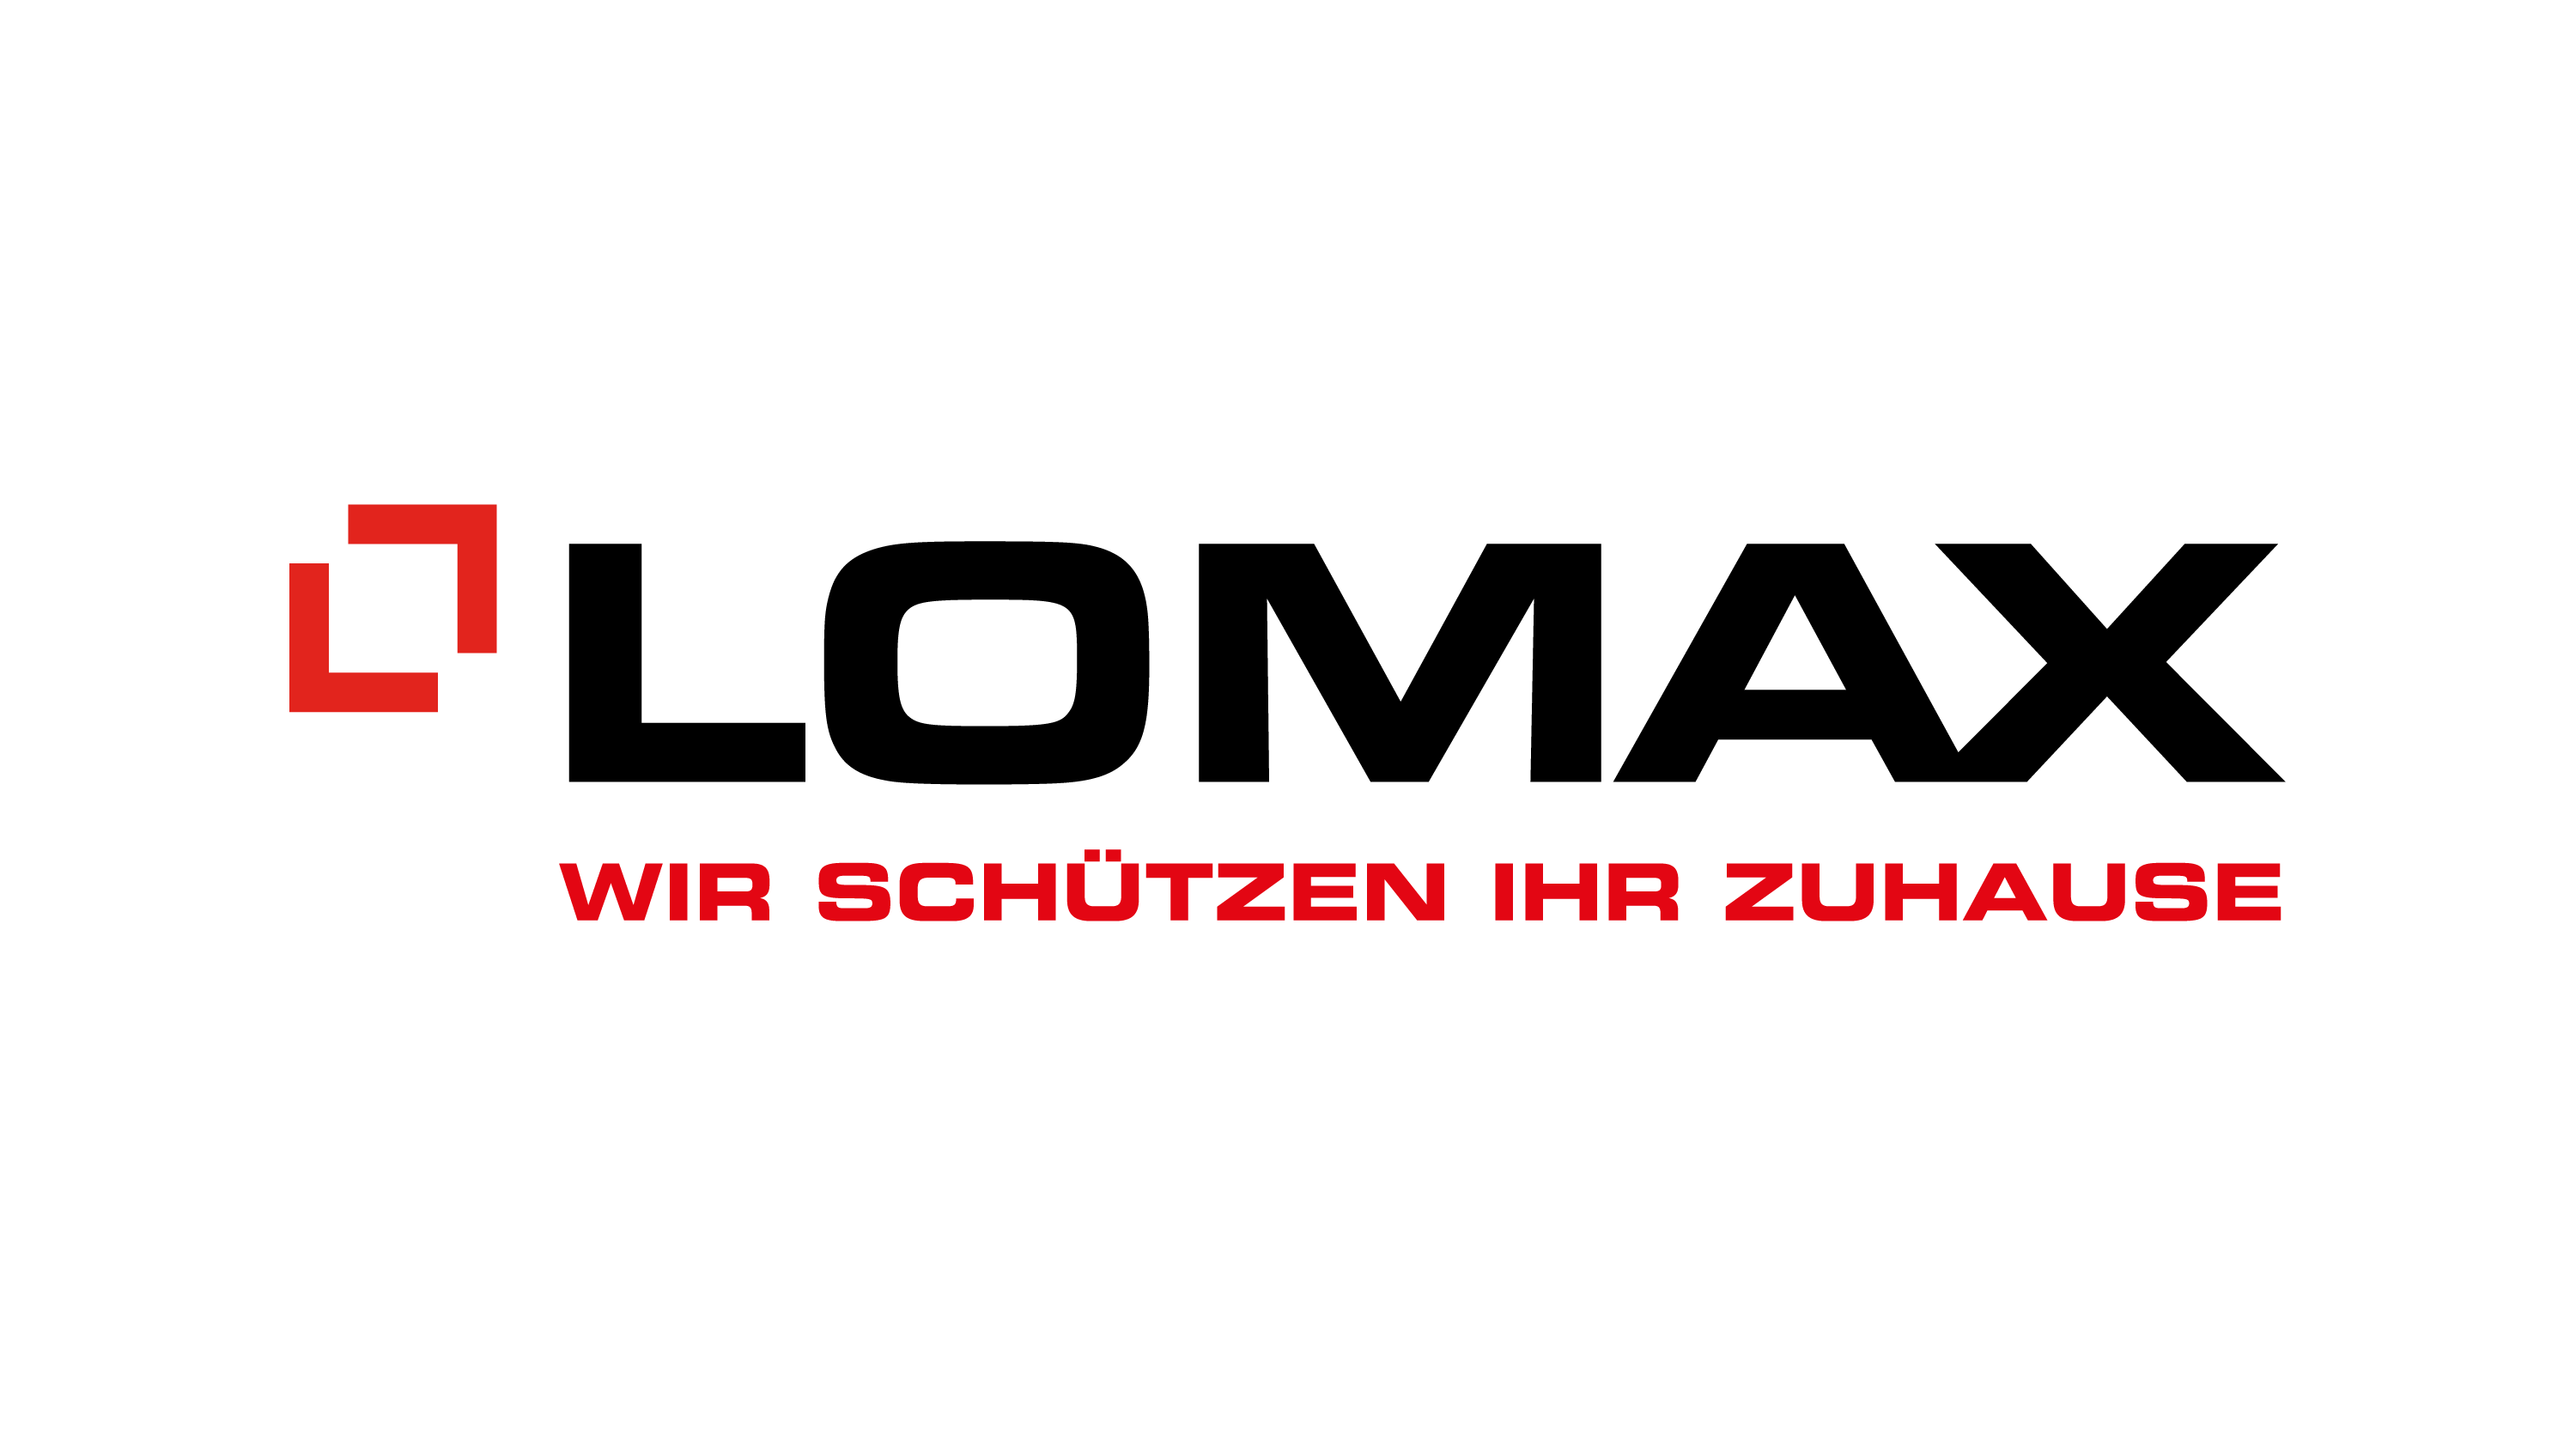 Lomax logo a claim